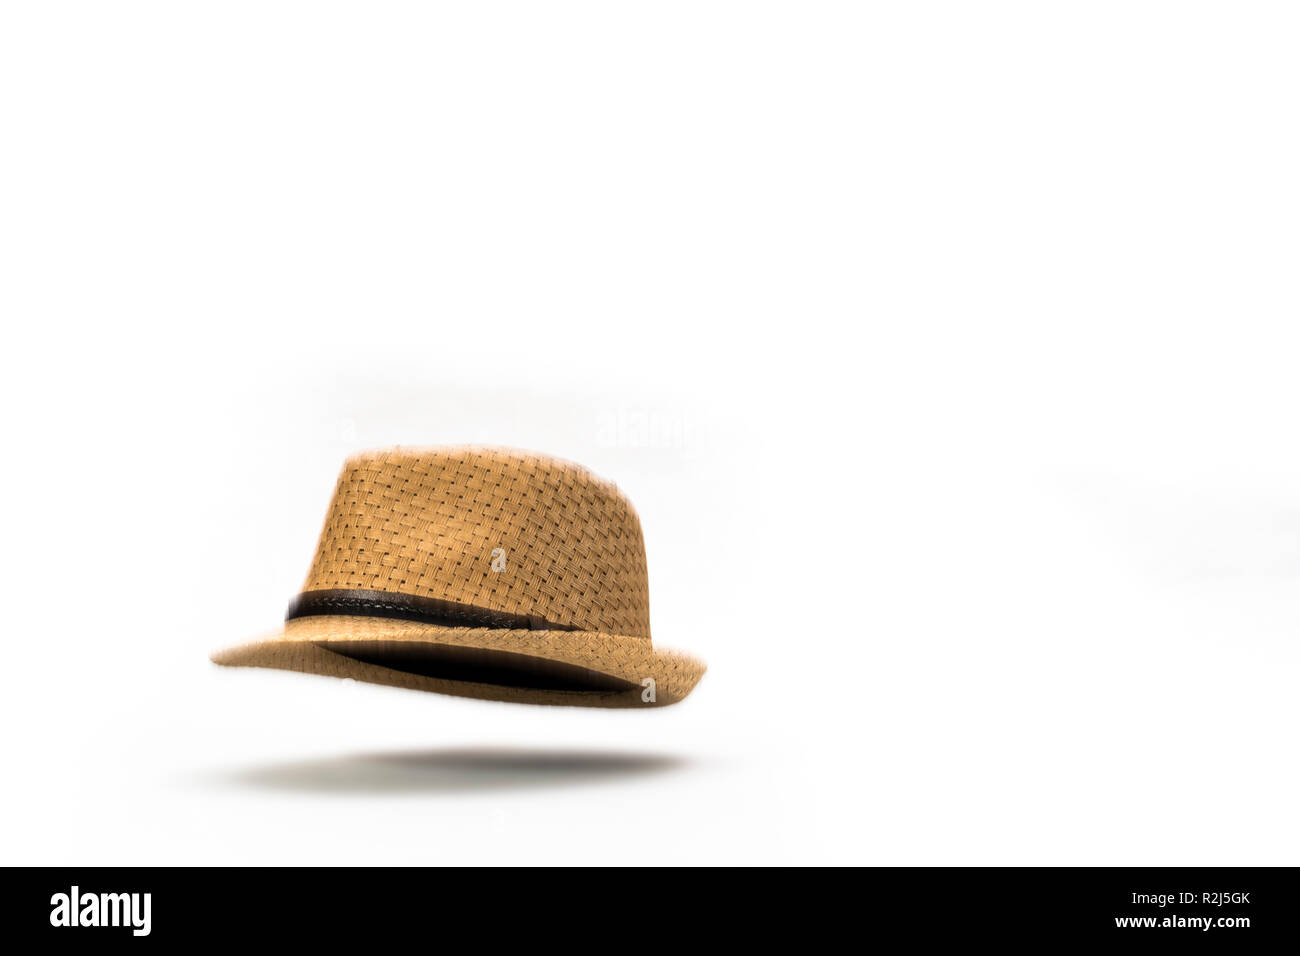 Alla caduta di un cappello. Una paglia panama hat cadere contro uno sfondo bianco. Foto Stock